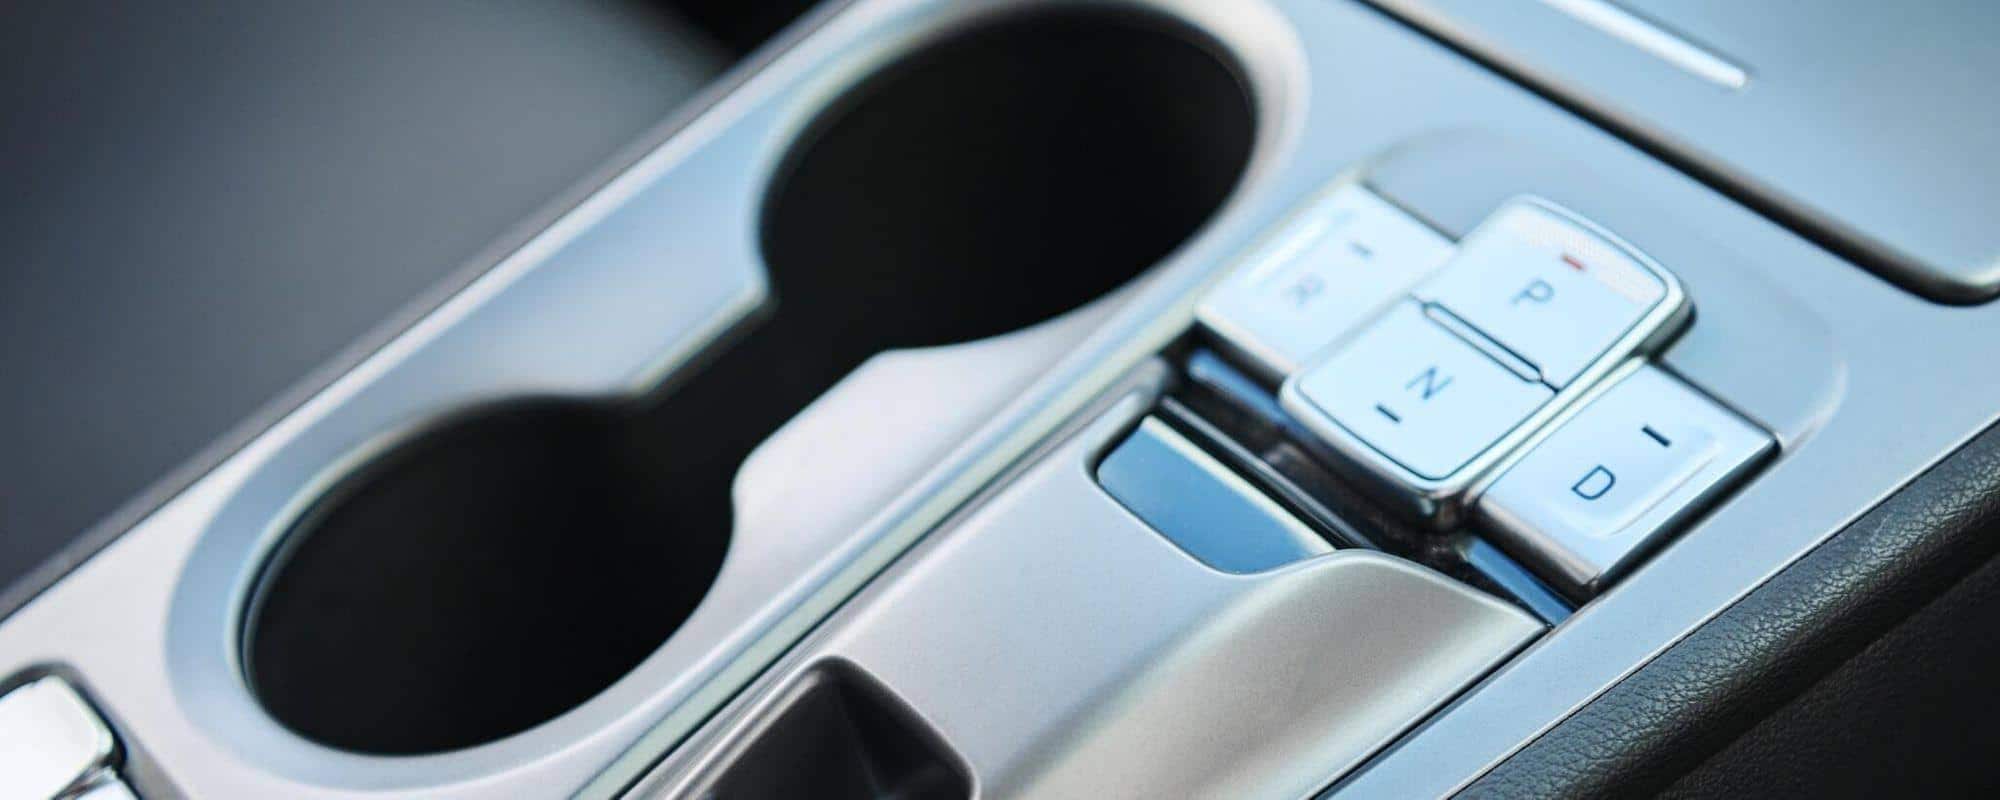 Hyundai Ioniq 5 Steering Wheel